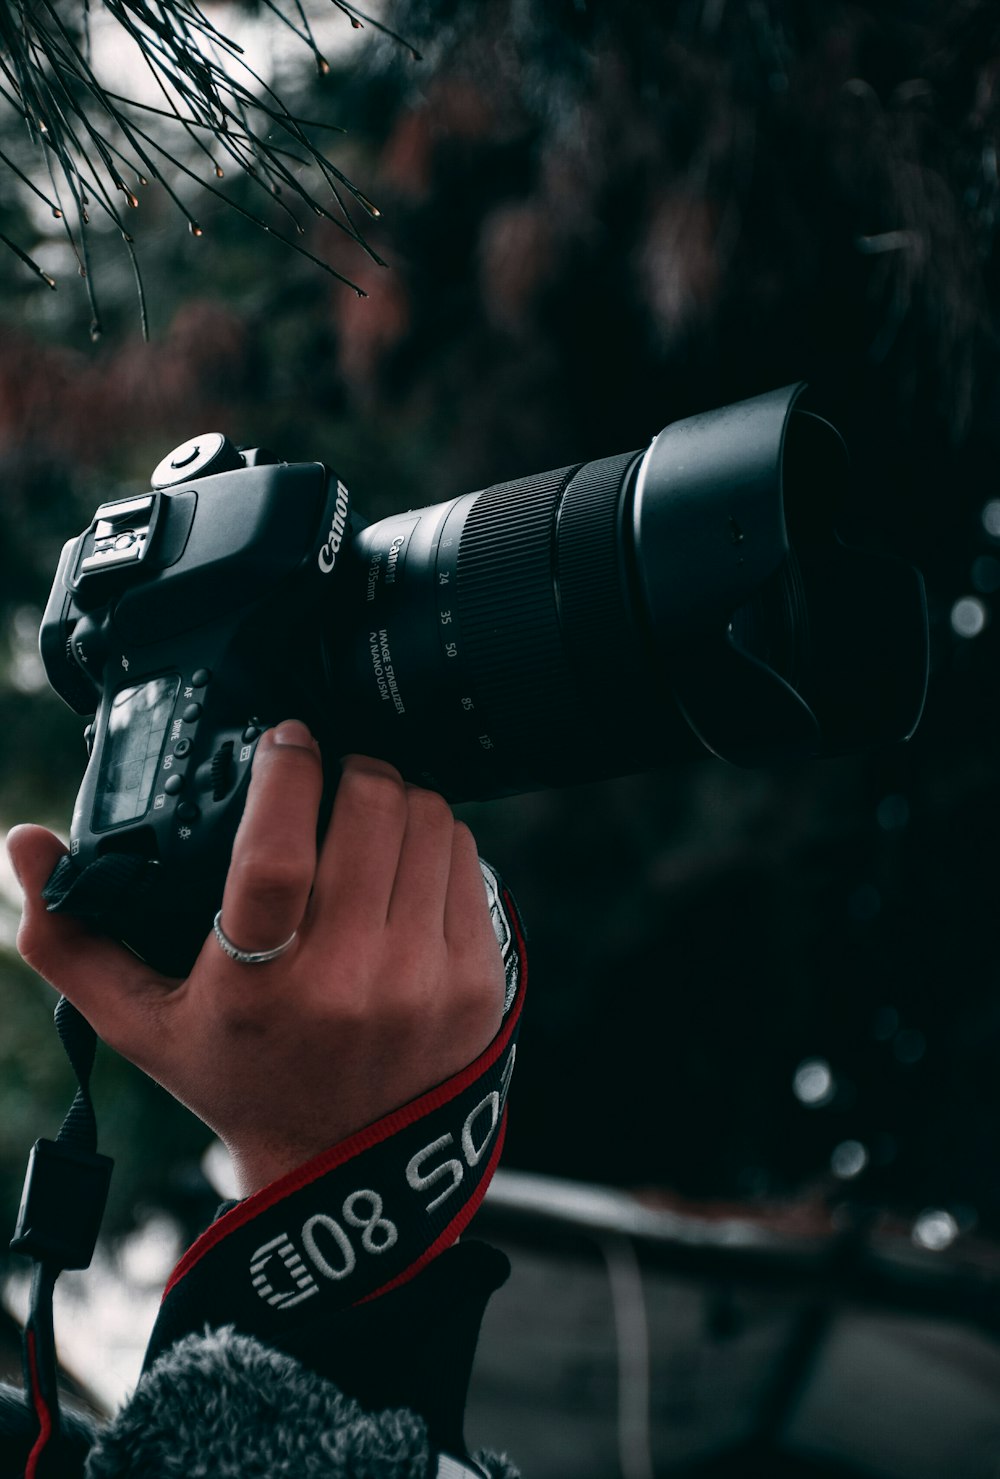 Persona que sostiene una cámara réflex digital Canon negra